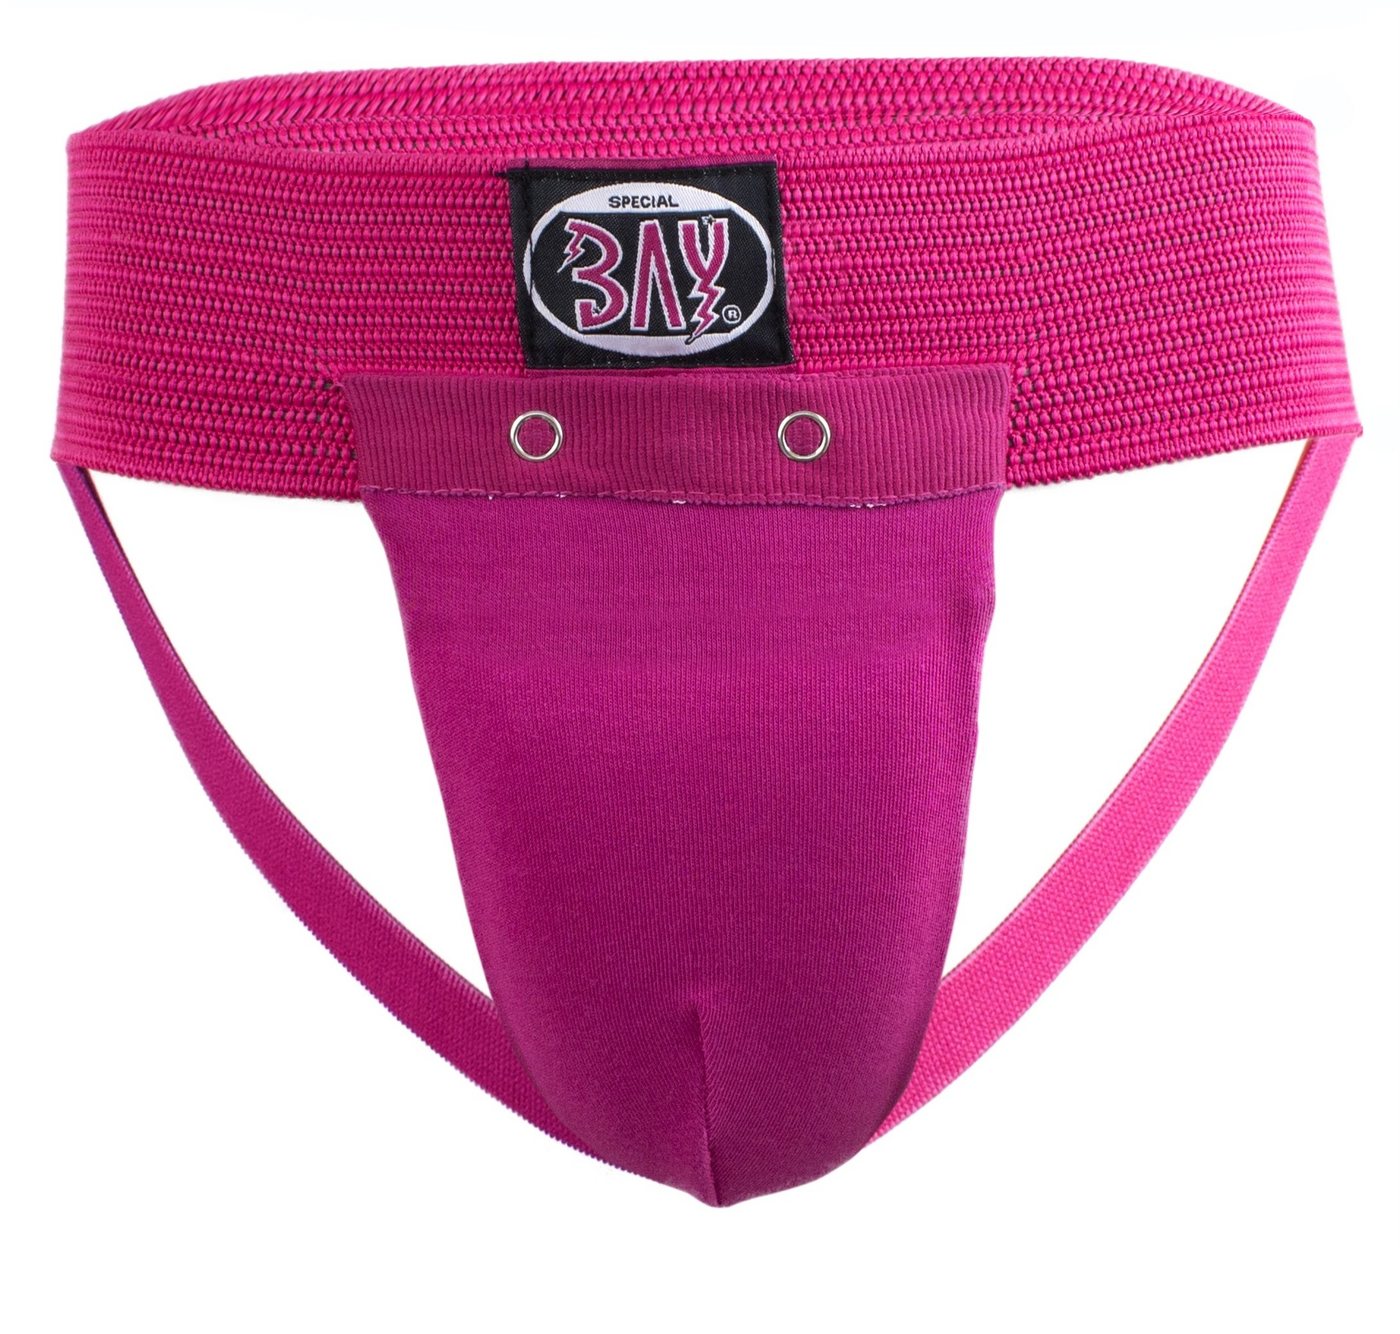 BAY-Sports Tiefschutz Soft Damen Suspensorium Frauen Mädchen pink, Für Erwachsene und Kinder, XS - XL, Lady, waschmaschinenfest von BAY-Sports